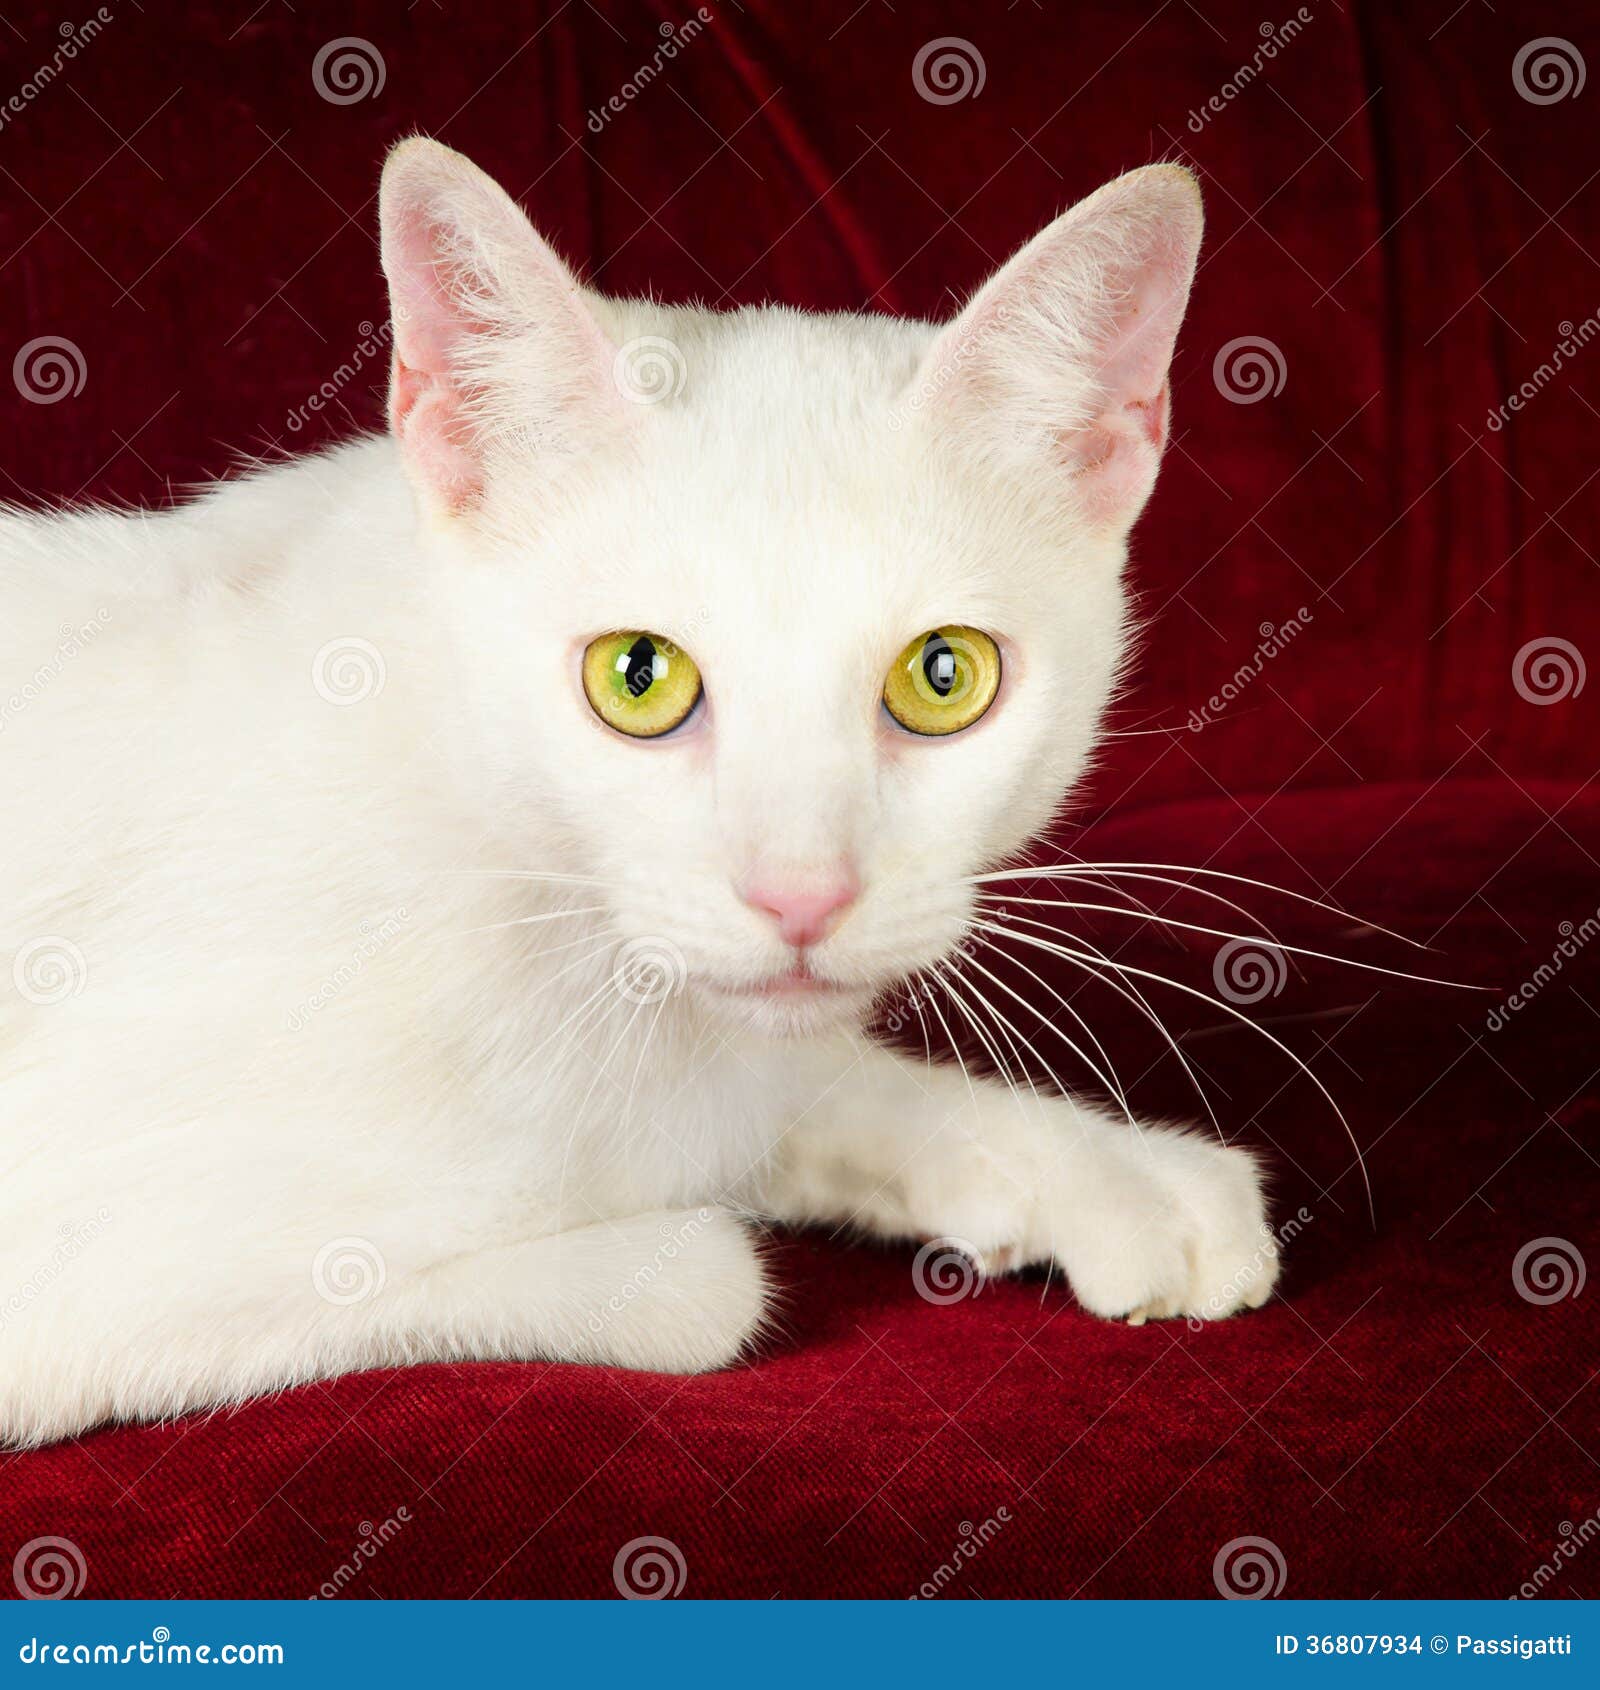 Belle Cat Kitten Blanche Sur Le Divan Rouge De Velours Photo stock - Image  du chéri, chat: 36807934